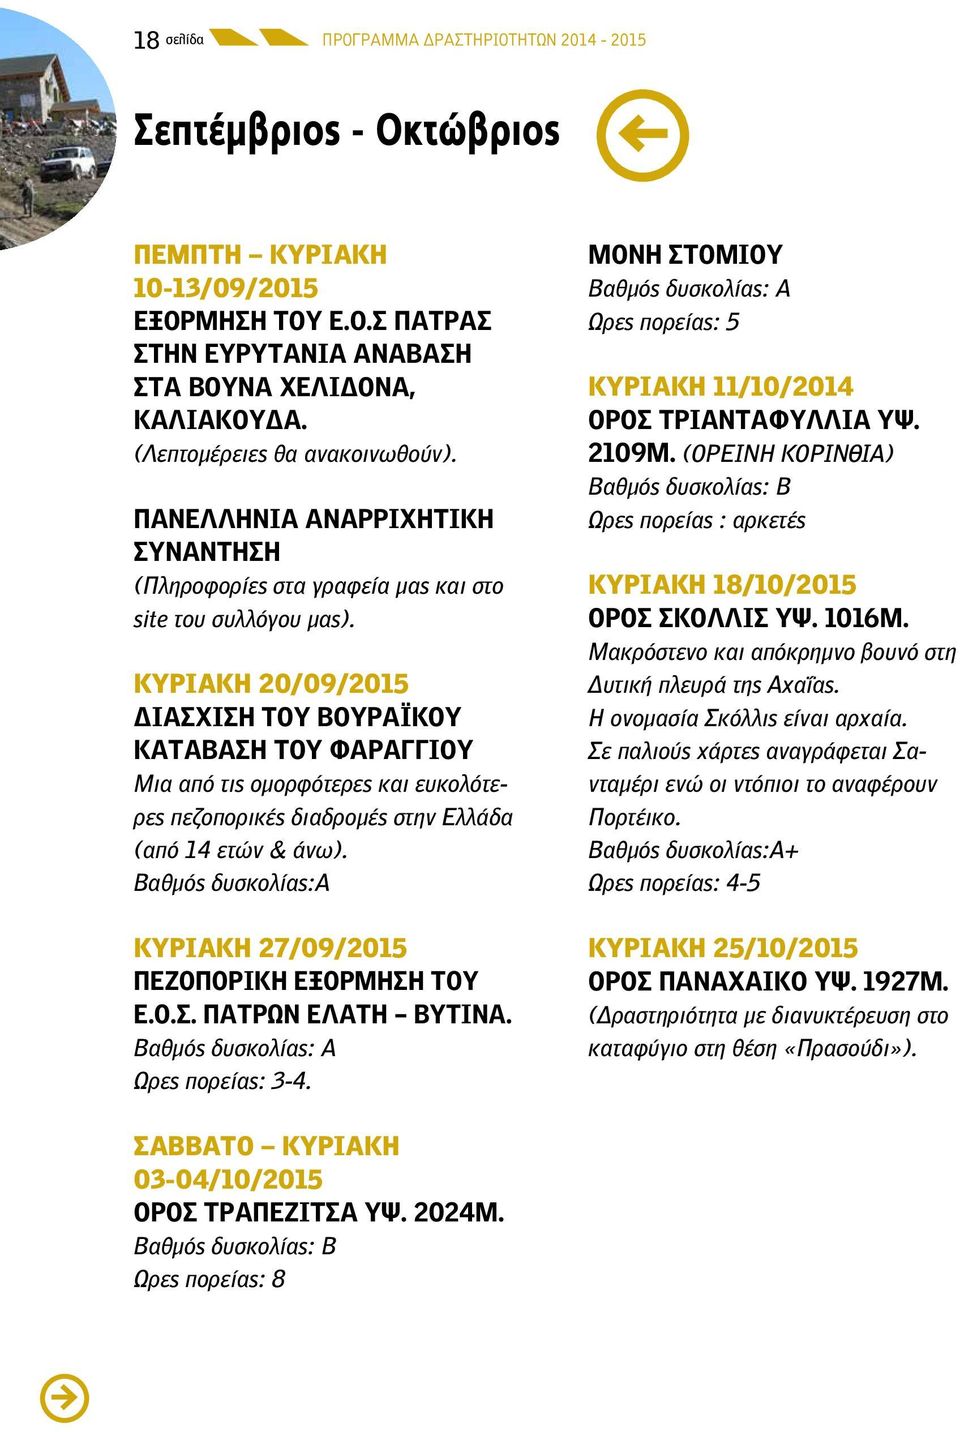 ΚΥΡΙΑΚΗ 20/09/2015 ΔΙΑΣΧΙΣΗ ΤΟΥ ΒΟΥΡΑΪΚΟΥ ΚΑΤΑΒΑΣΗ ΤΟΥ ΦΑΡΑΓΓΙΟΥ Μια από τις ομορφότερες και ευκολότερες πεζοπορικές διαδρομές στην Ελλάδα (από 14 ετών & άνω).